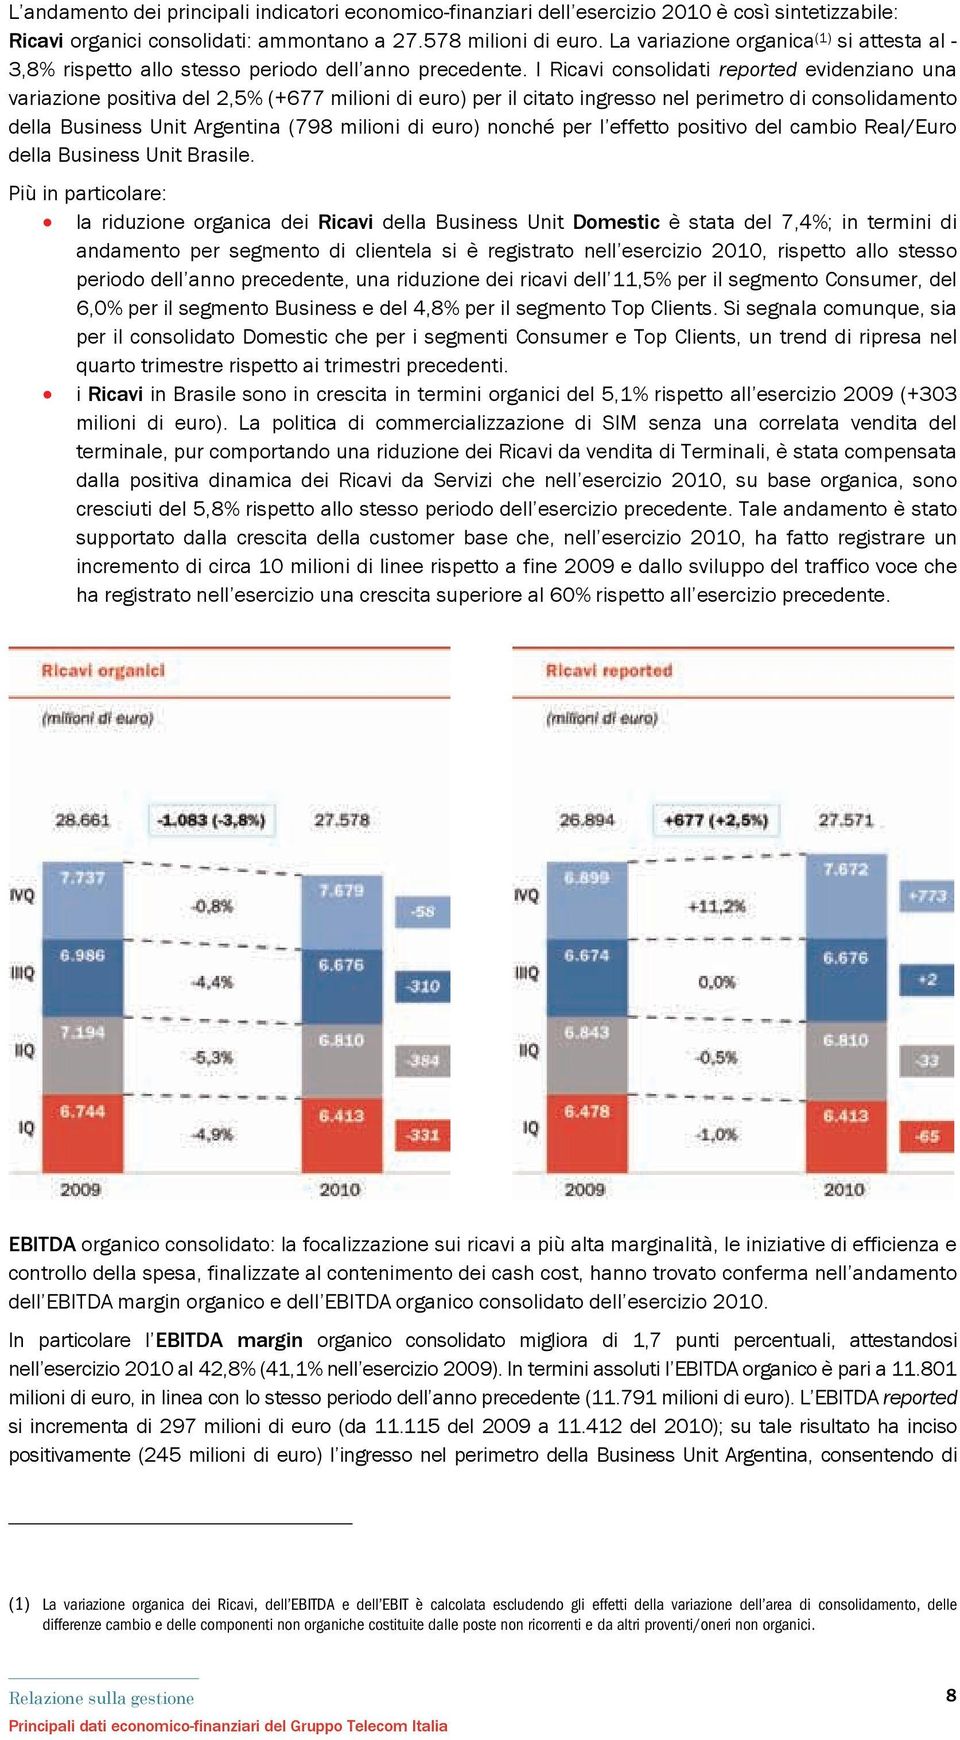 I Ricavi consolidati reported evidenziano una variazione positiva del 2,5% (+677 milioni di euro) per il citato ingresso nel perimetro di consolidamento della Business Unit Argentina (798 milioni di